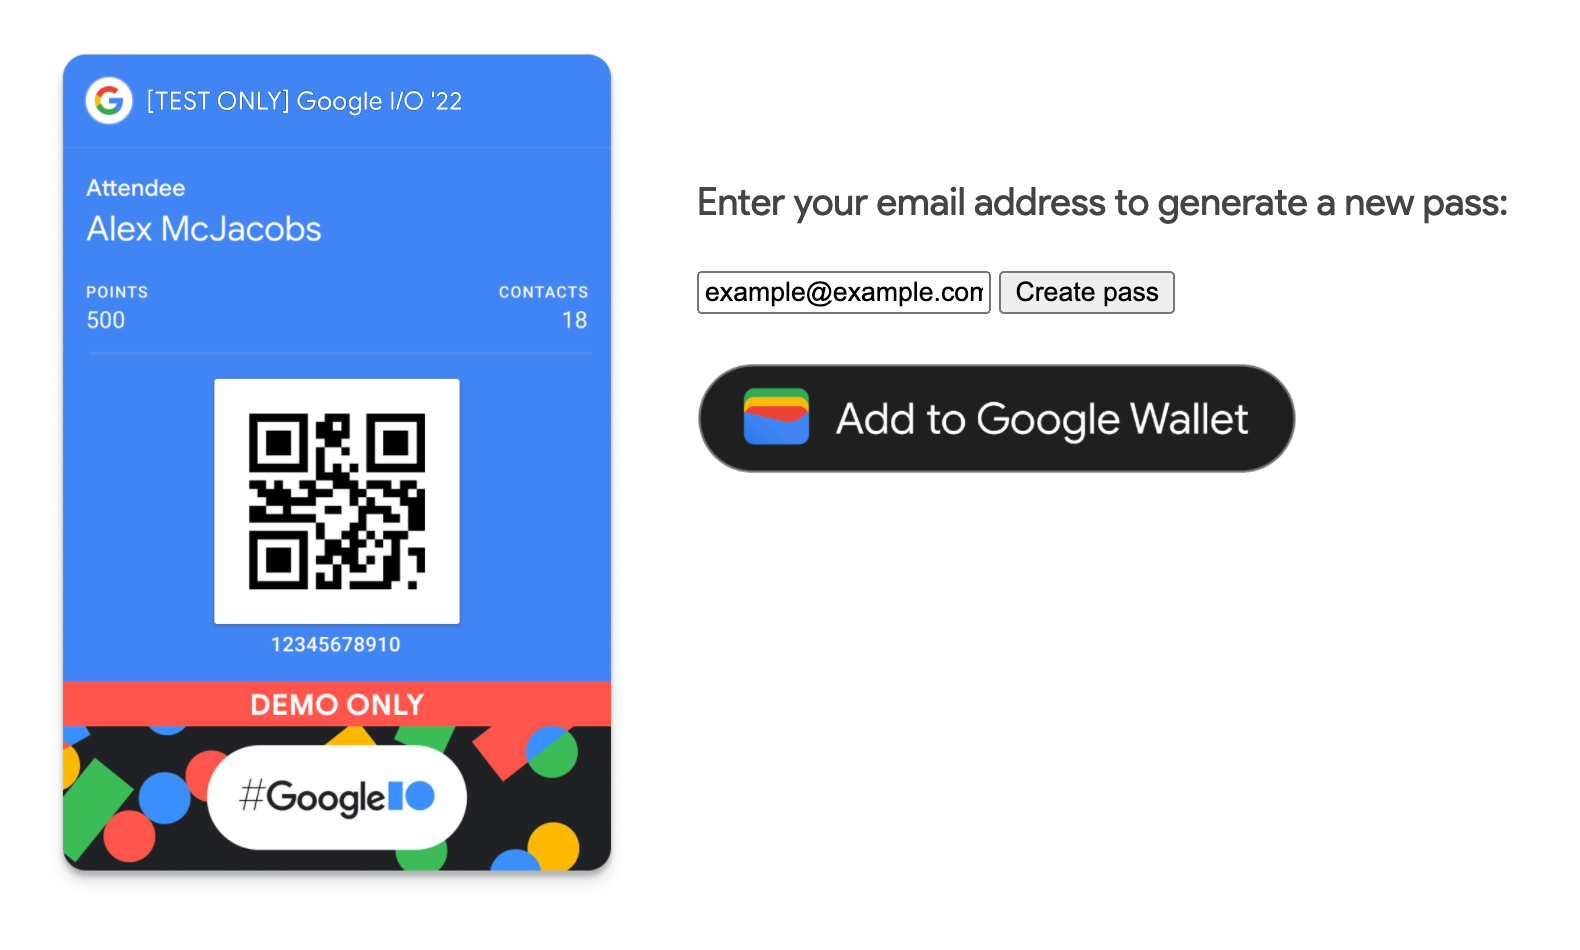 دکمه افزودن به Google Wallet با موفقیت در قسمت جلوی برنامه ارائه شد